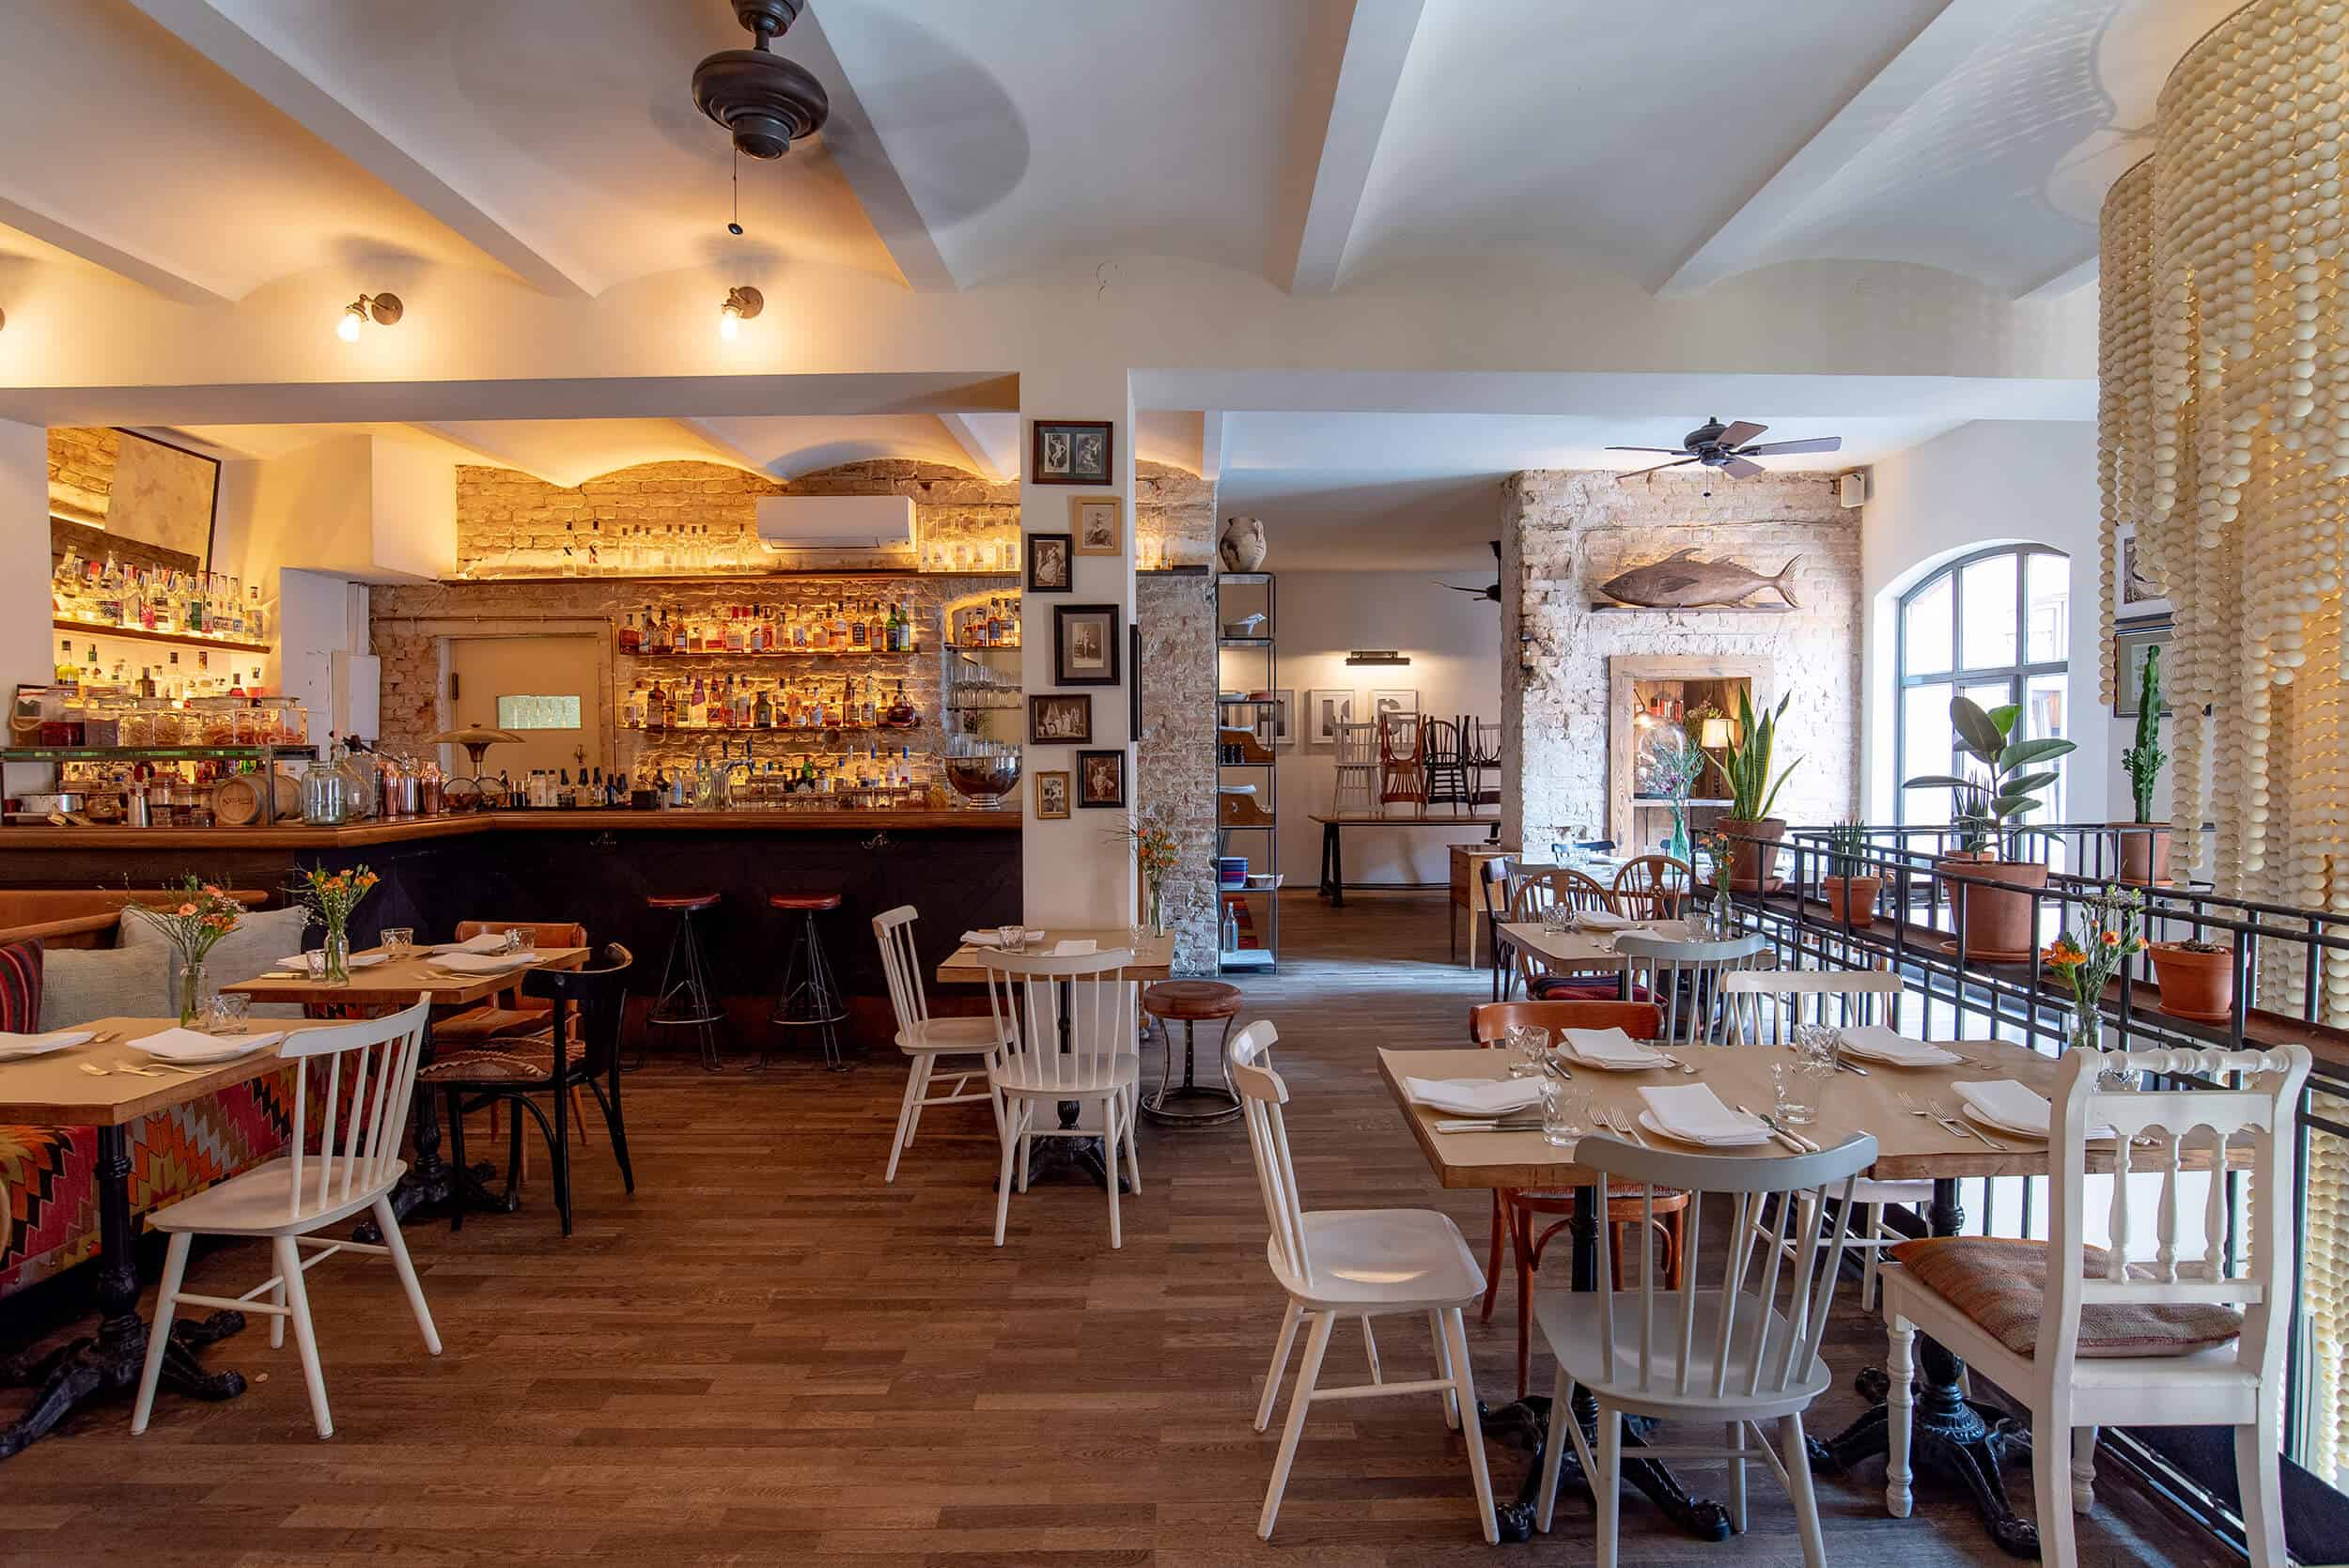 Innenansicht eines geräumigen, stilvoll eingerichteten Restaurants im Obergeschoss mit einer gut bestückten Bar, verschiedenen Sitzbereichen und dekorativen Elementen.